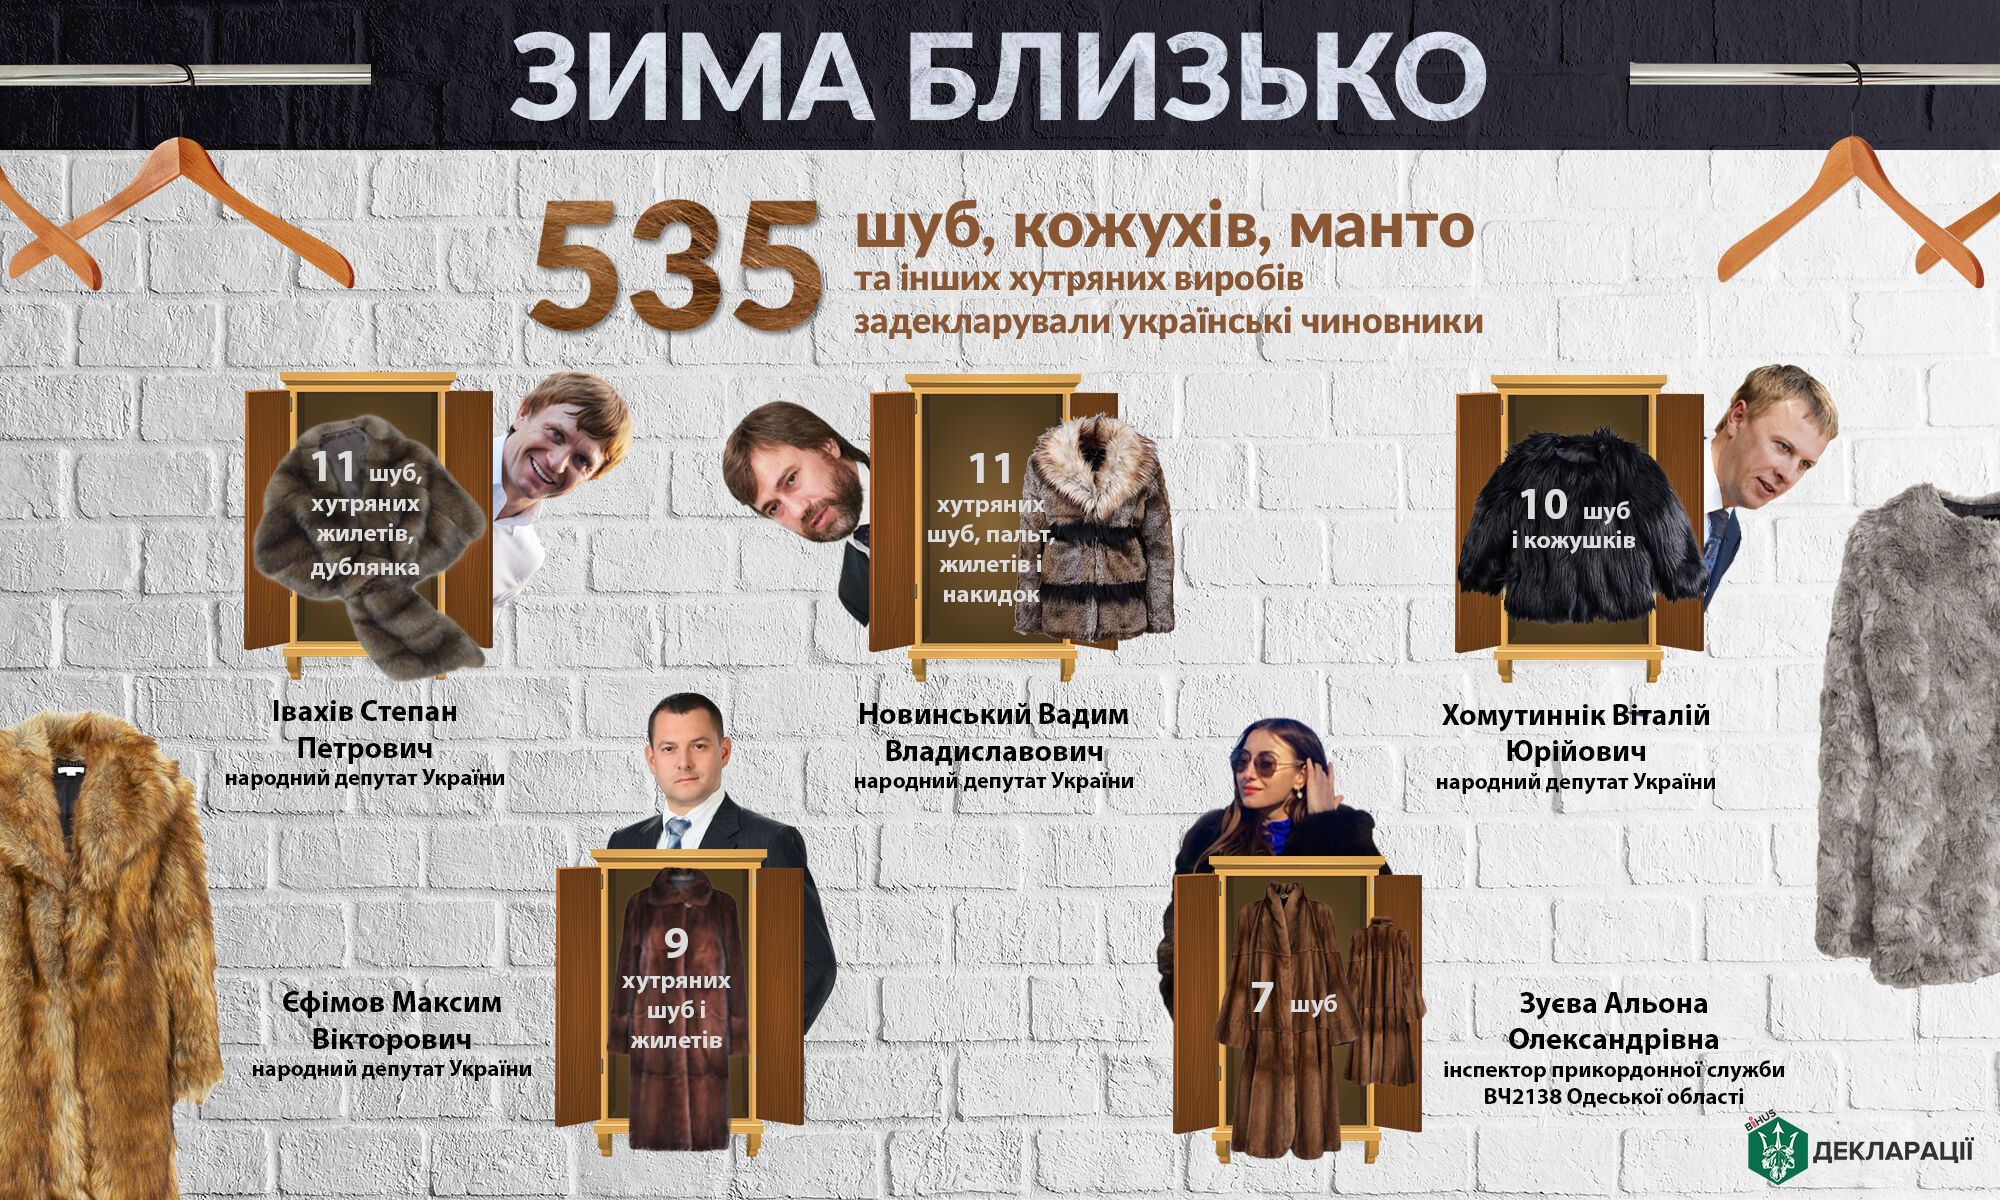 "Зима близько": опубліковано рейтинг шуб українських чиновників і депутатів